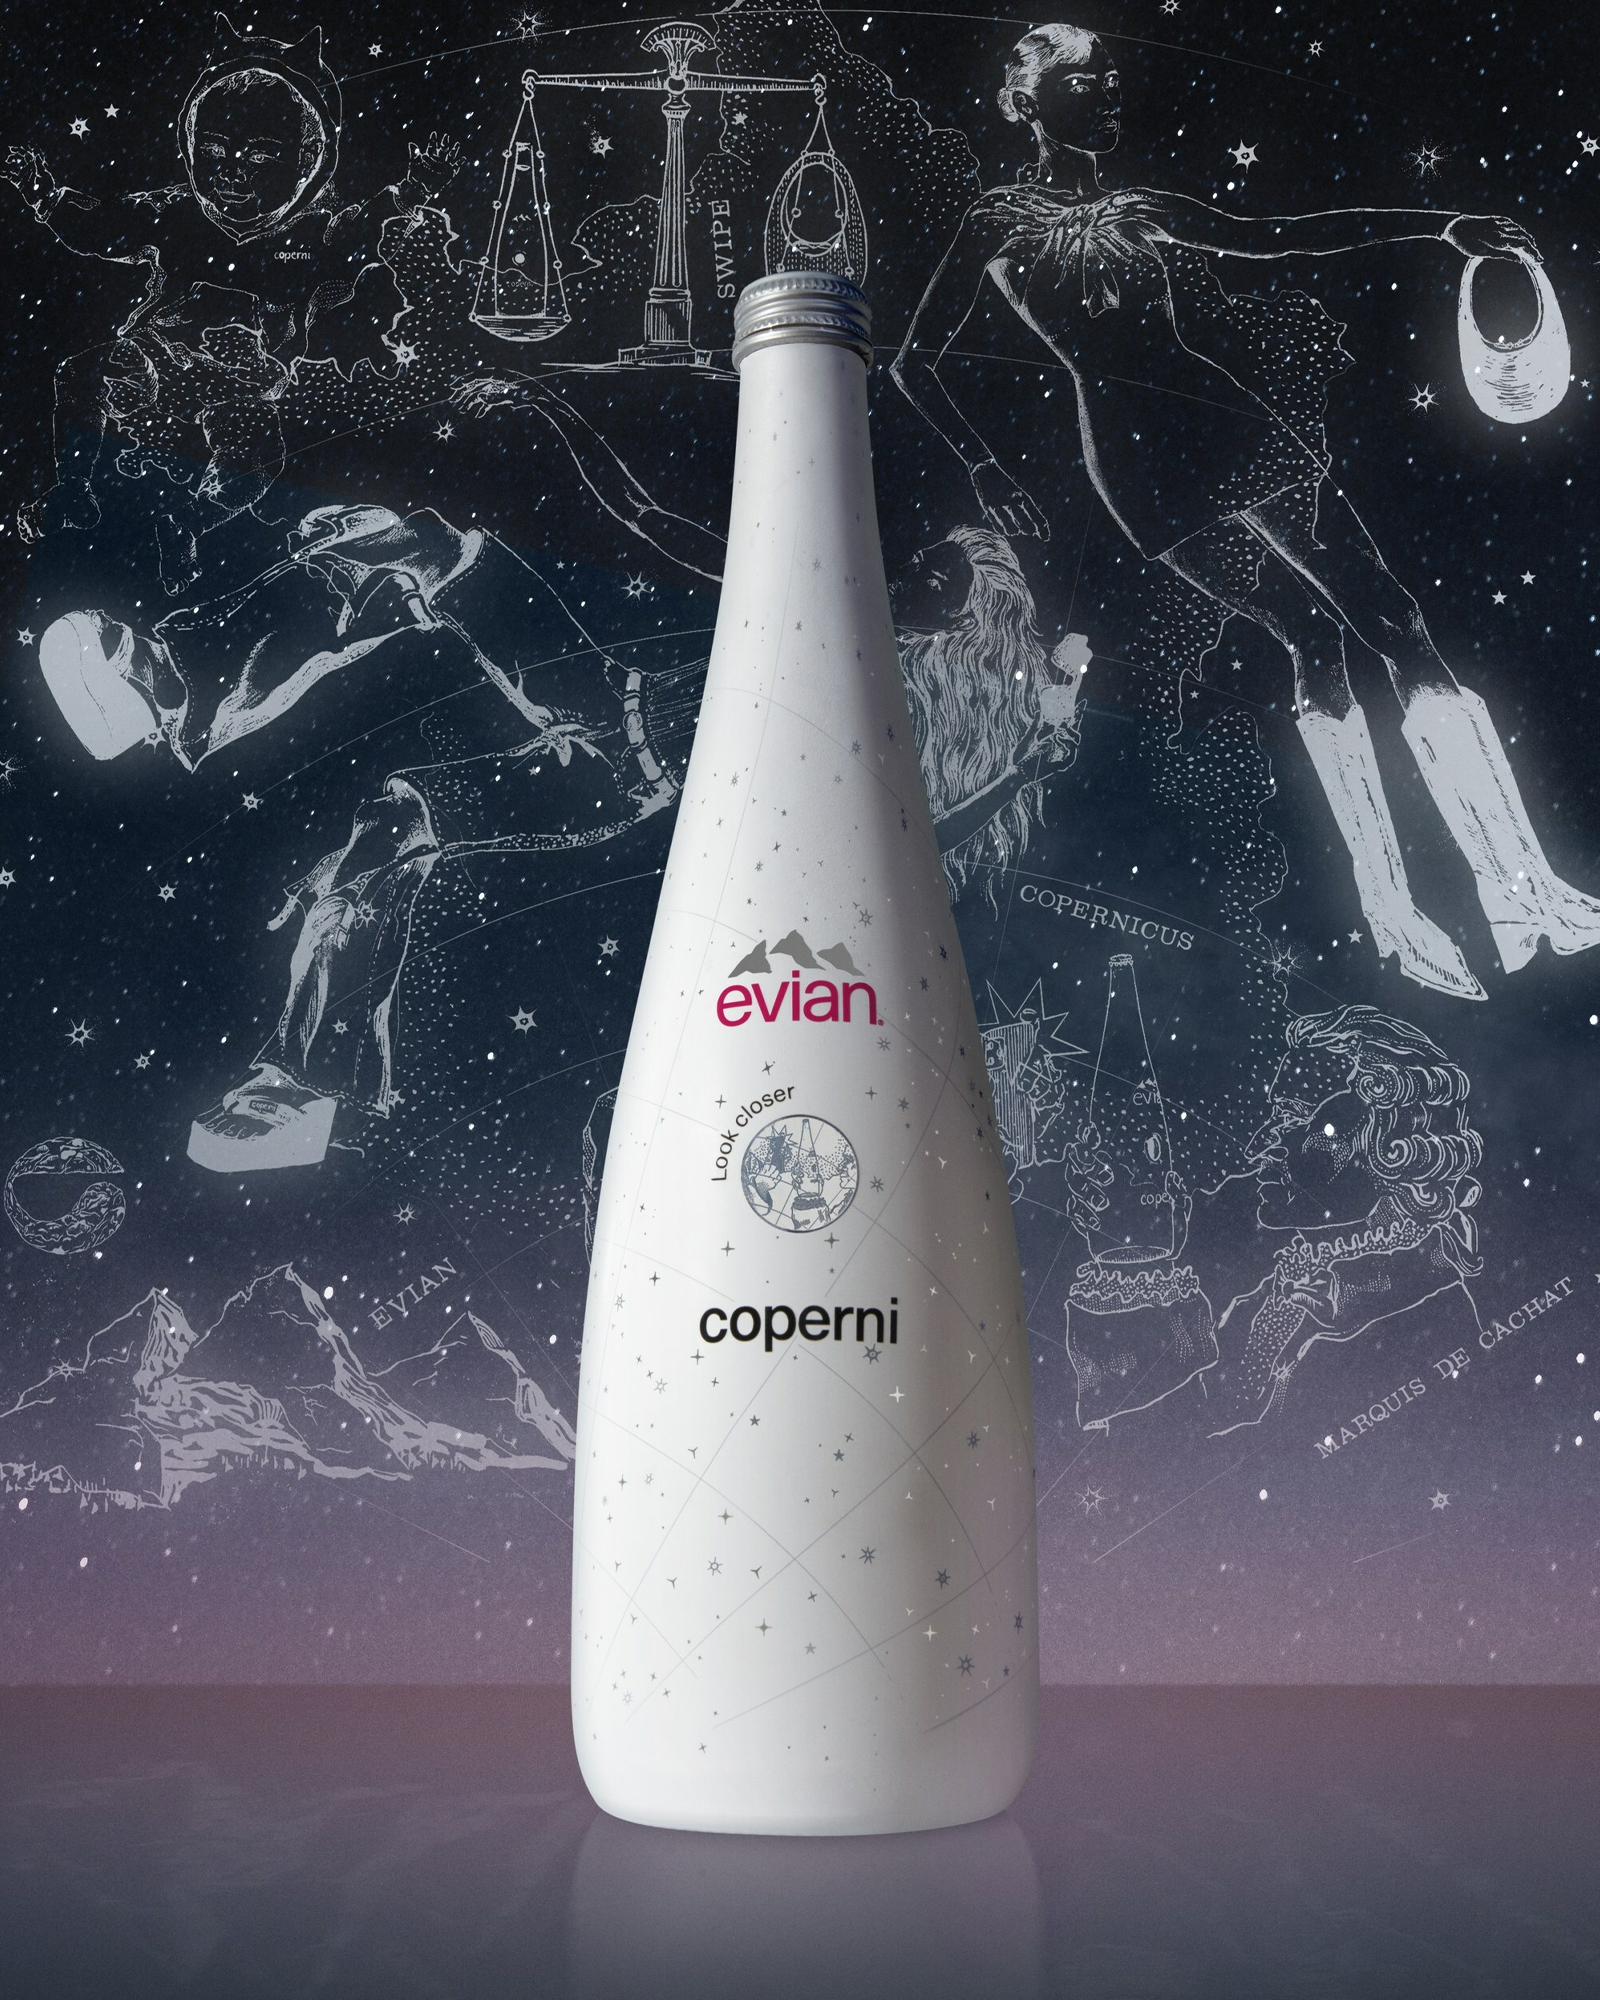 Coperni Evian Bottiglia acqua limited edition collaborazione